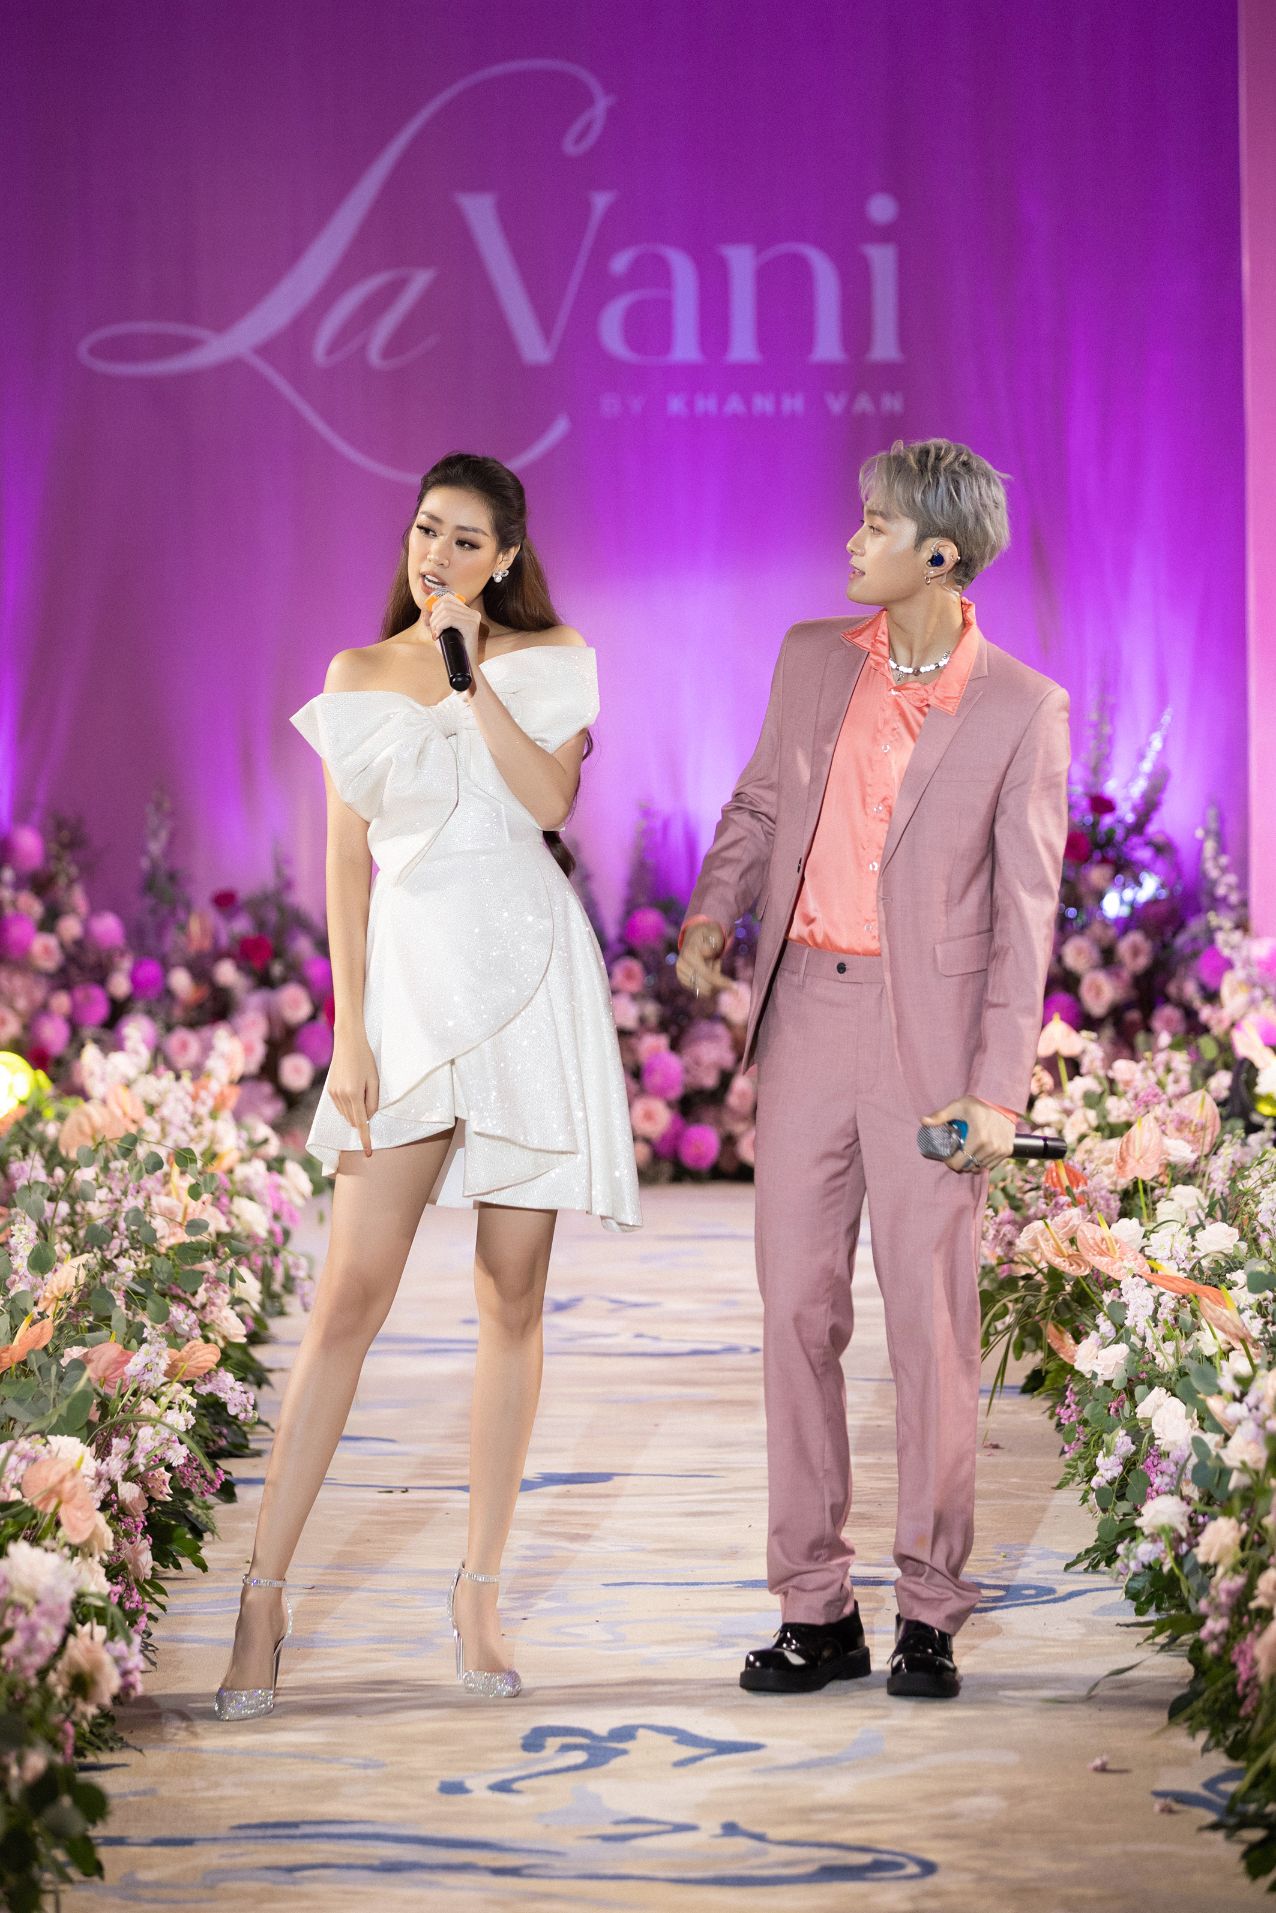 Lavani Grand Opening60 Hoa hậu Khánh Vân ra mắt thương hiệu thời trang riêng